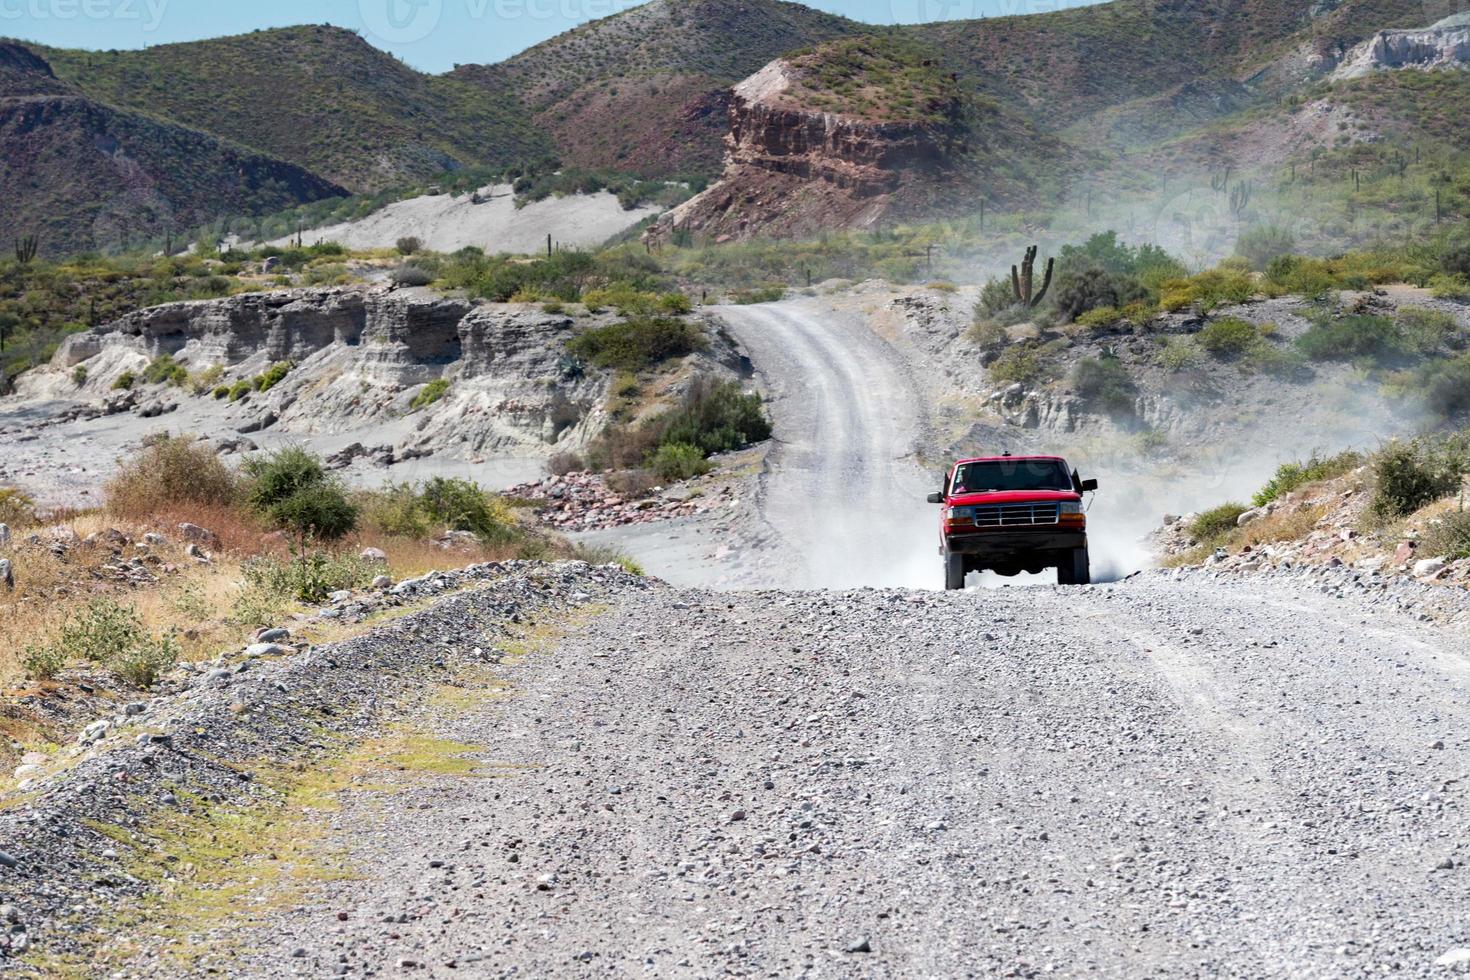 baja california désert route sans fin paysage vue photo